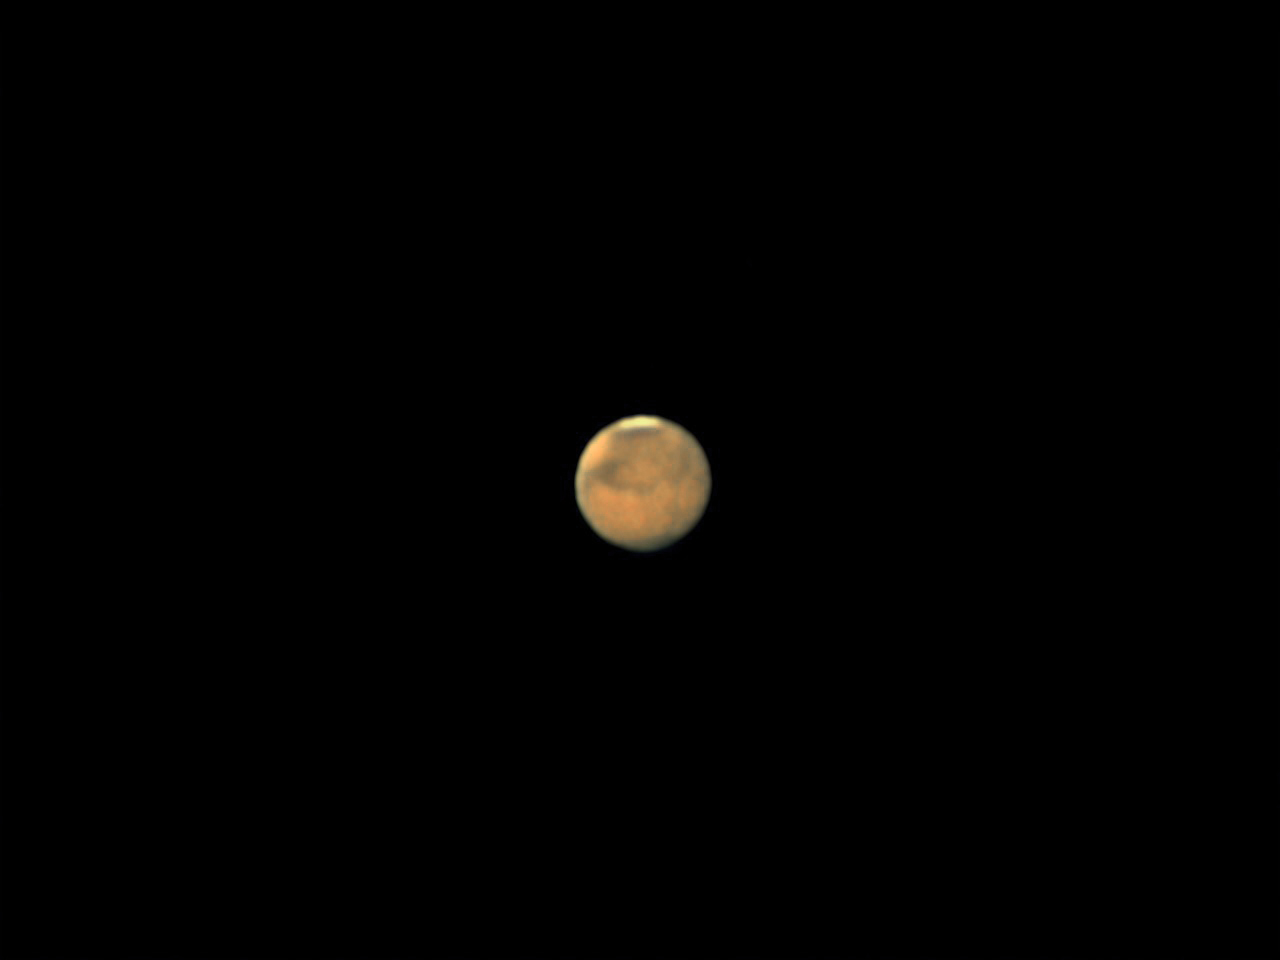 La planète Mars à son opposition avec un Télescope Newton de 200 mm